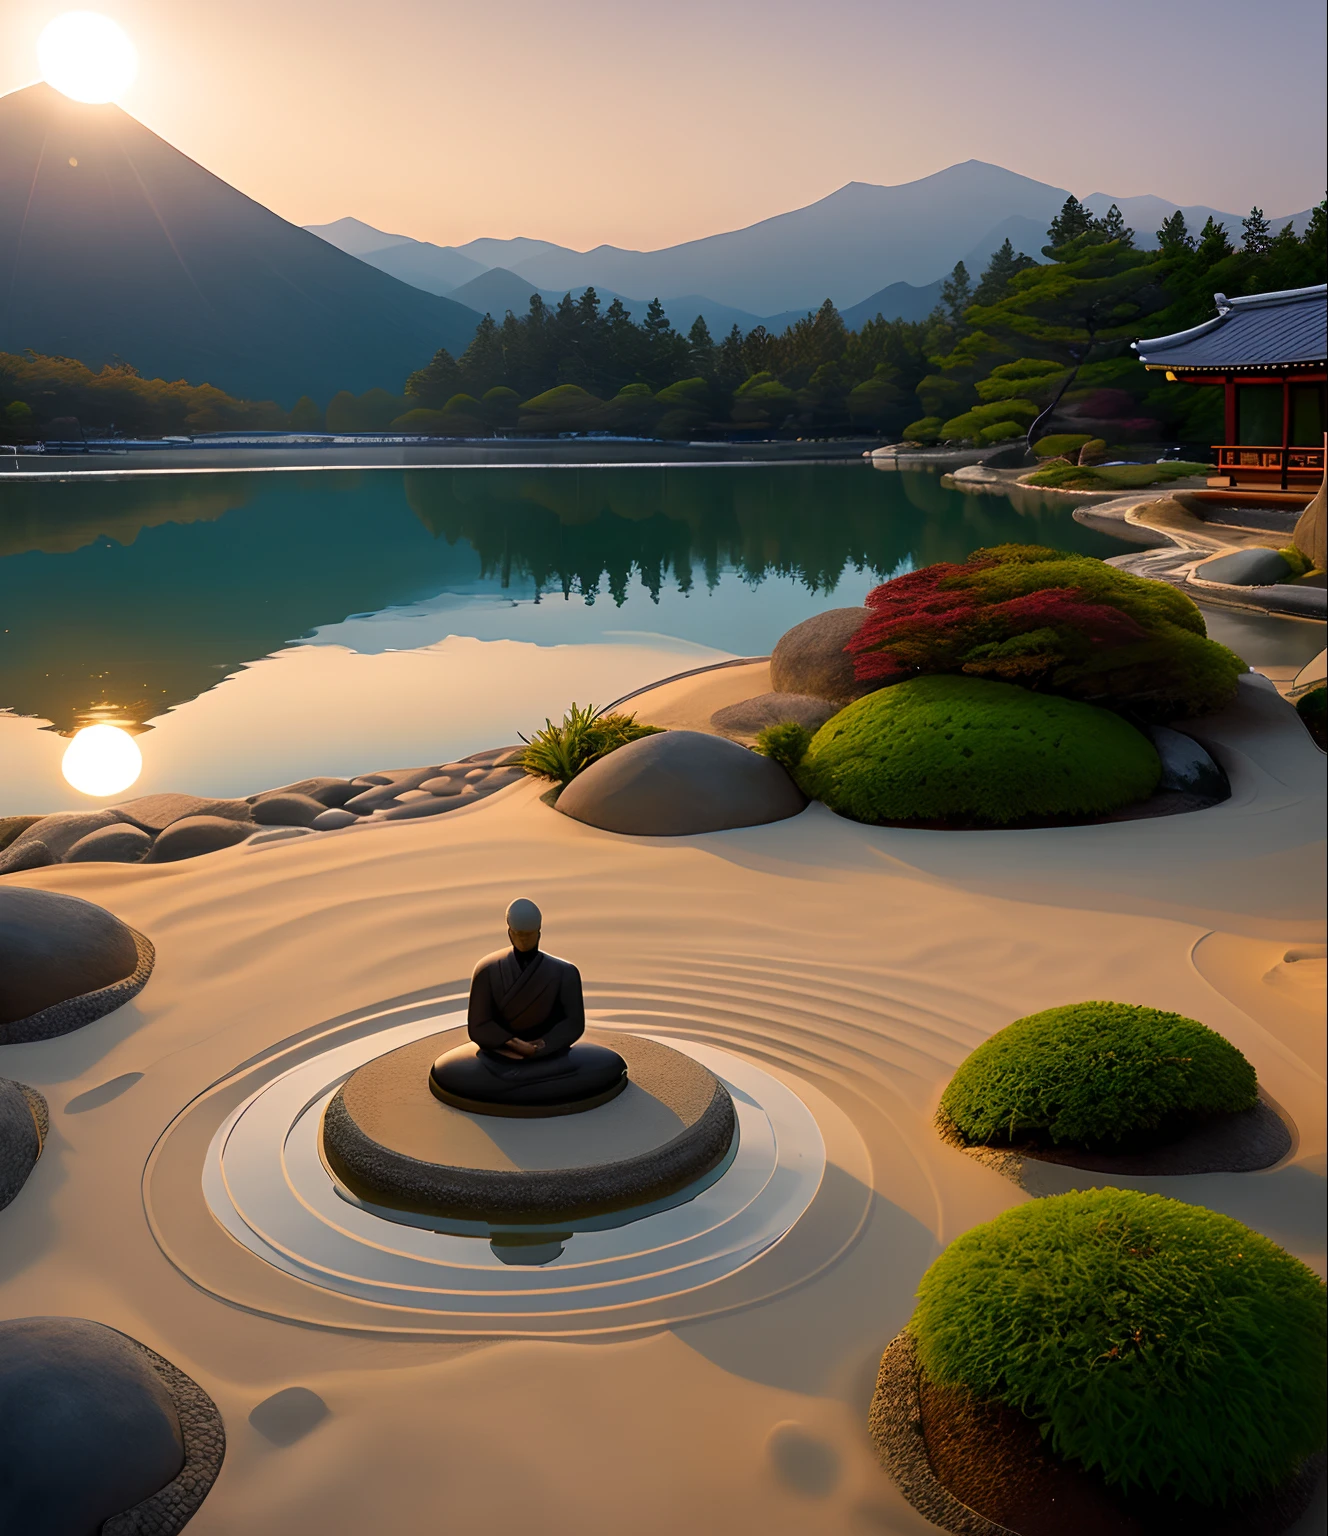 Безмятежная сцена японского сада дзен., с монахом, медитирующим в своей позе, окружен белым песком, тщательно продуманным в идеальных узорах, симметрично расположенные камни, мягкое освещение заходящего солнца, передает ощущение покоя и сосредоточенности, Реалистичная фотография, цифровая зеркальная камера с объективом 50 мм., --с 16:9 -- в 5